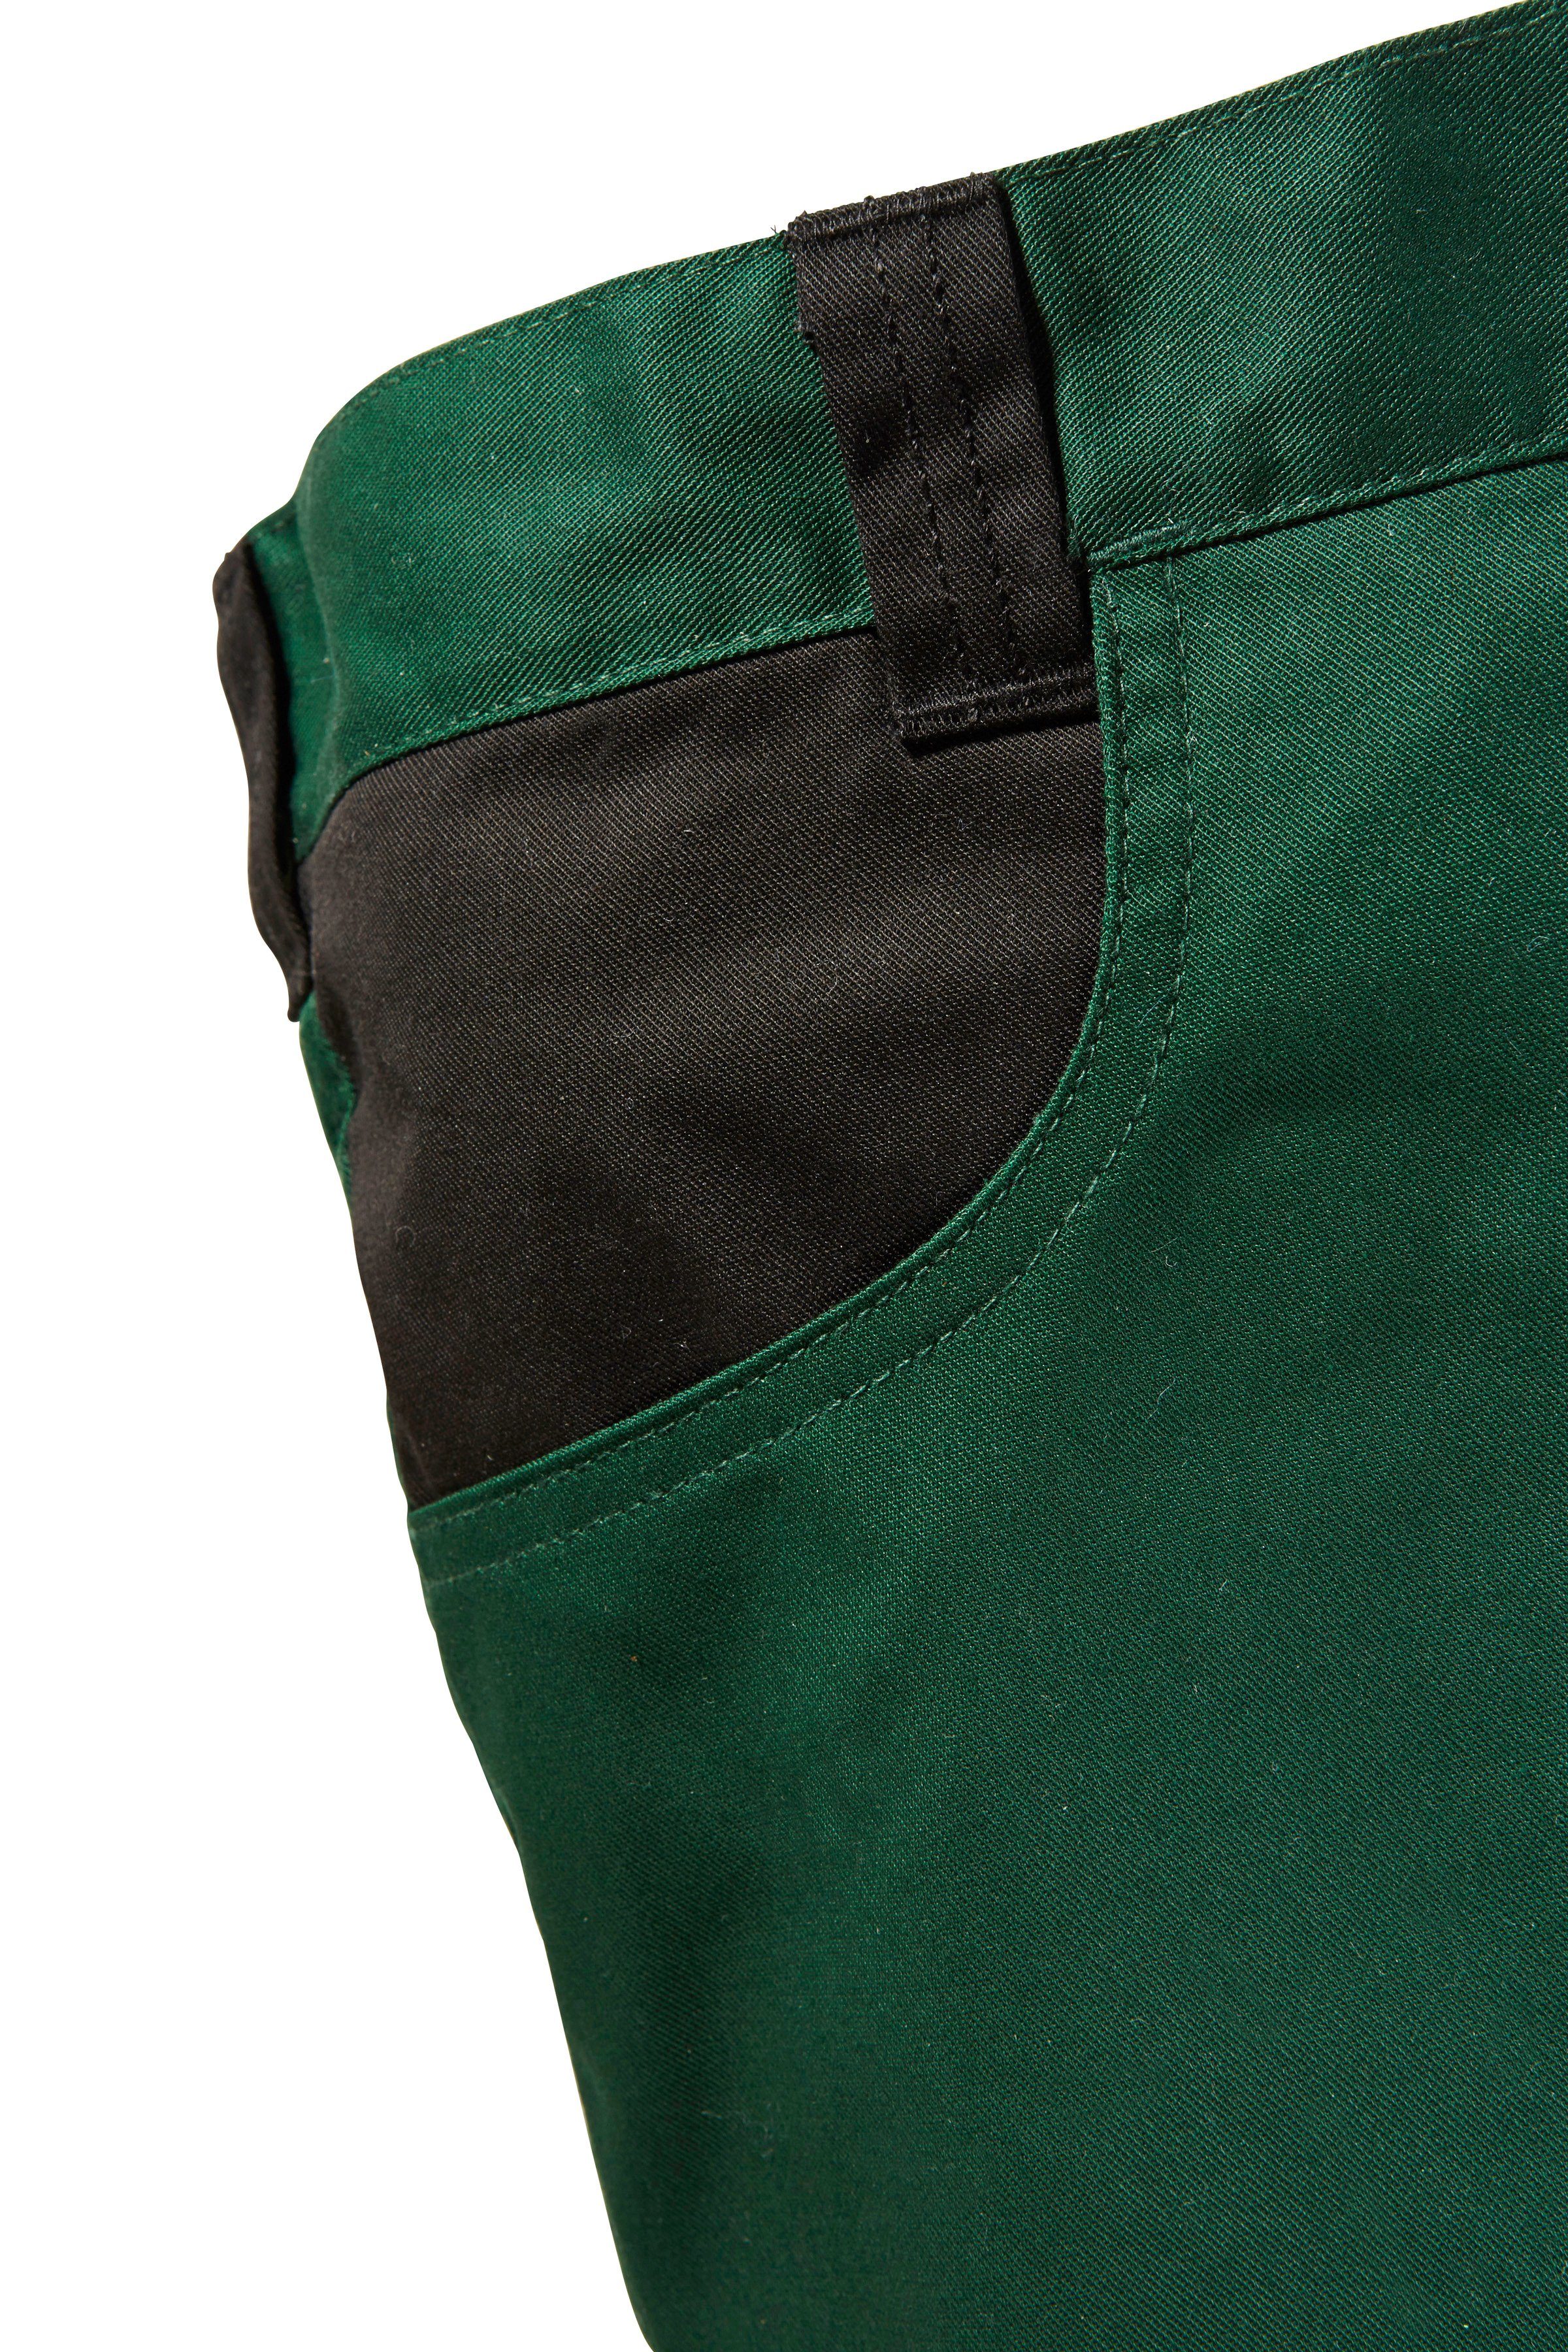 safety& more Arbeitshose Pull mit Knieverstärkung grün-schwarz